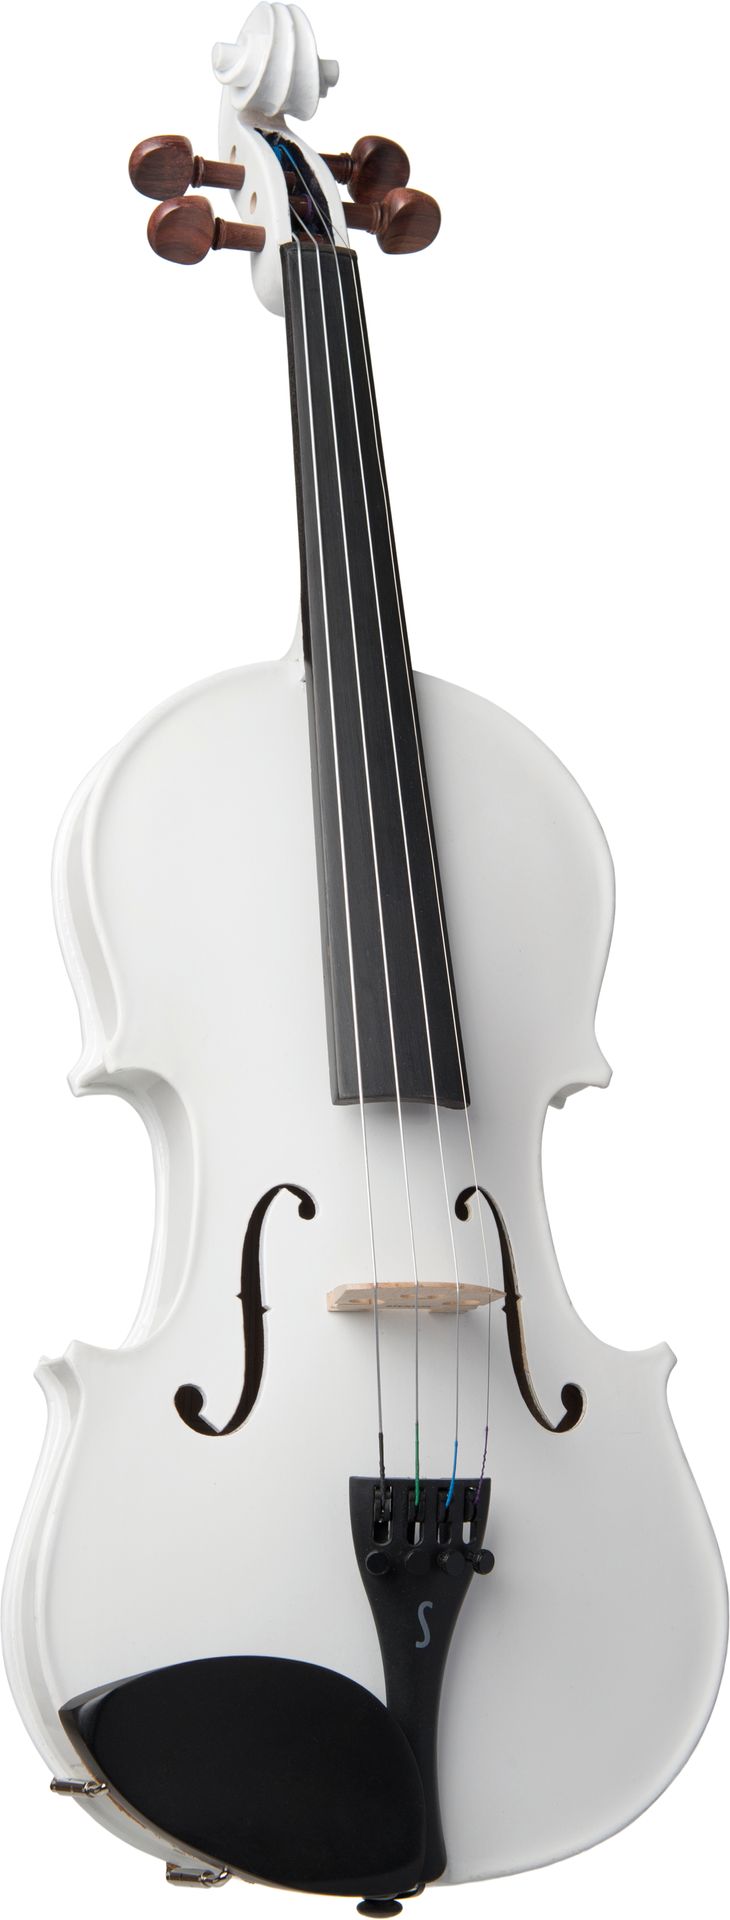 Stentor Violine Harlequin Weiß 3/4 SR-1401WHC 3/4 Garnitur